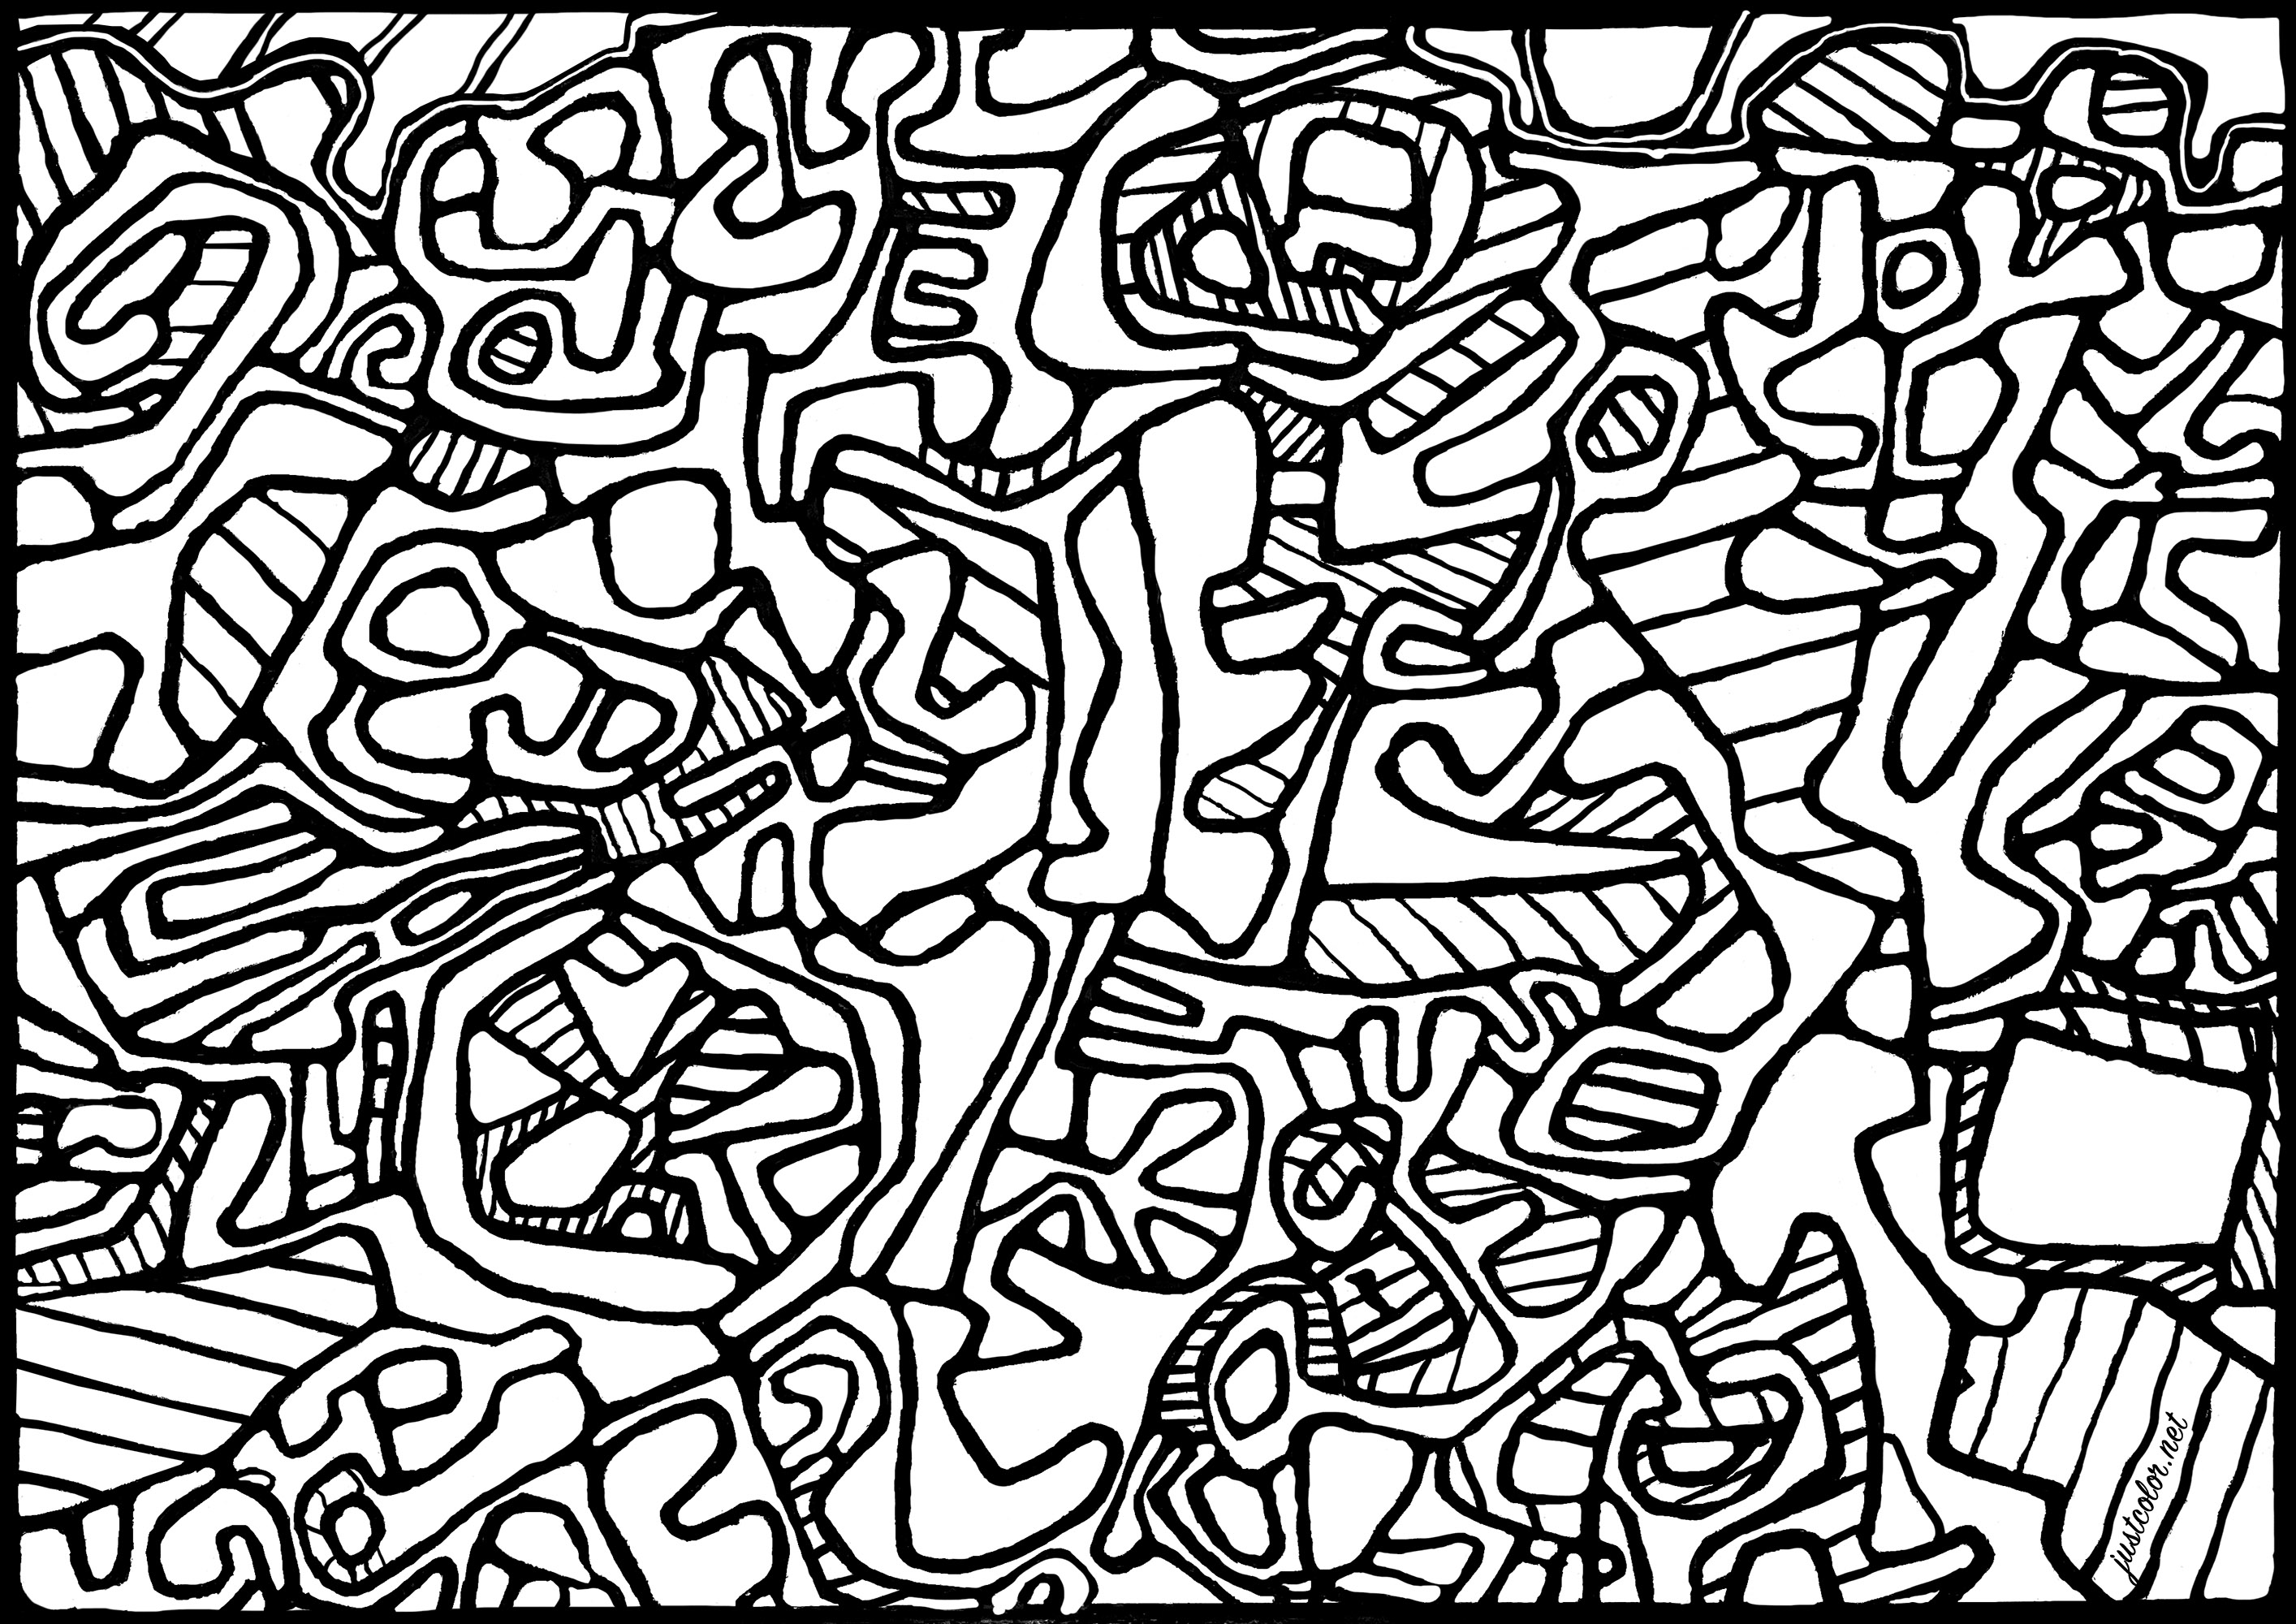 Coloração baseada no quadro 'Jardin L'Hourloupe' de Jean Dubuffet (1966). Jean Dubuffet iniciou a sua carreira pintando paisagens e retratos. Interessado na expressão livre e instintiva do artista sem formação, fundou o movimento Art Brut e criou muitas obras nesta estética, utilizando materiais como o betão e a terra. Desenvolveu também o conceito de 'Hourloupe', um universo fantástico povoado por personagens estranhas e grotescas. Dubuffet era também um colecionador apaixonado de arte bruta, tendo criado uma importante coleção que foi exposta em todo o mundo.